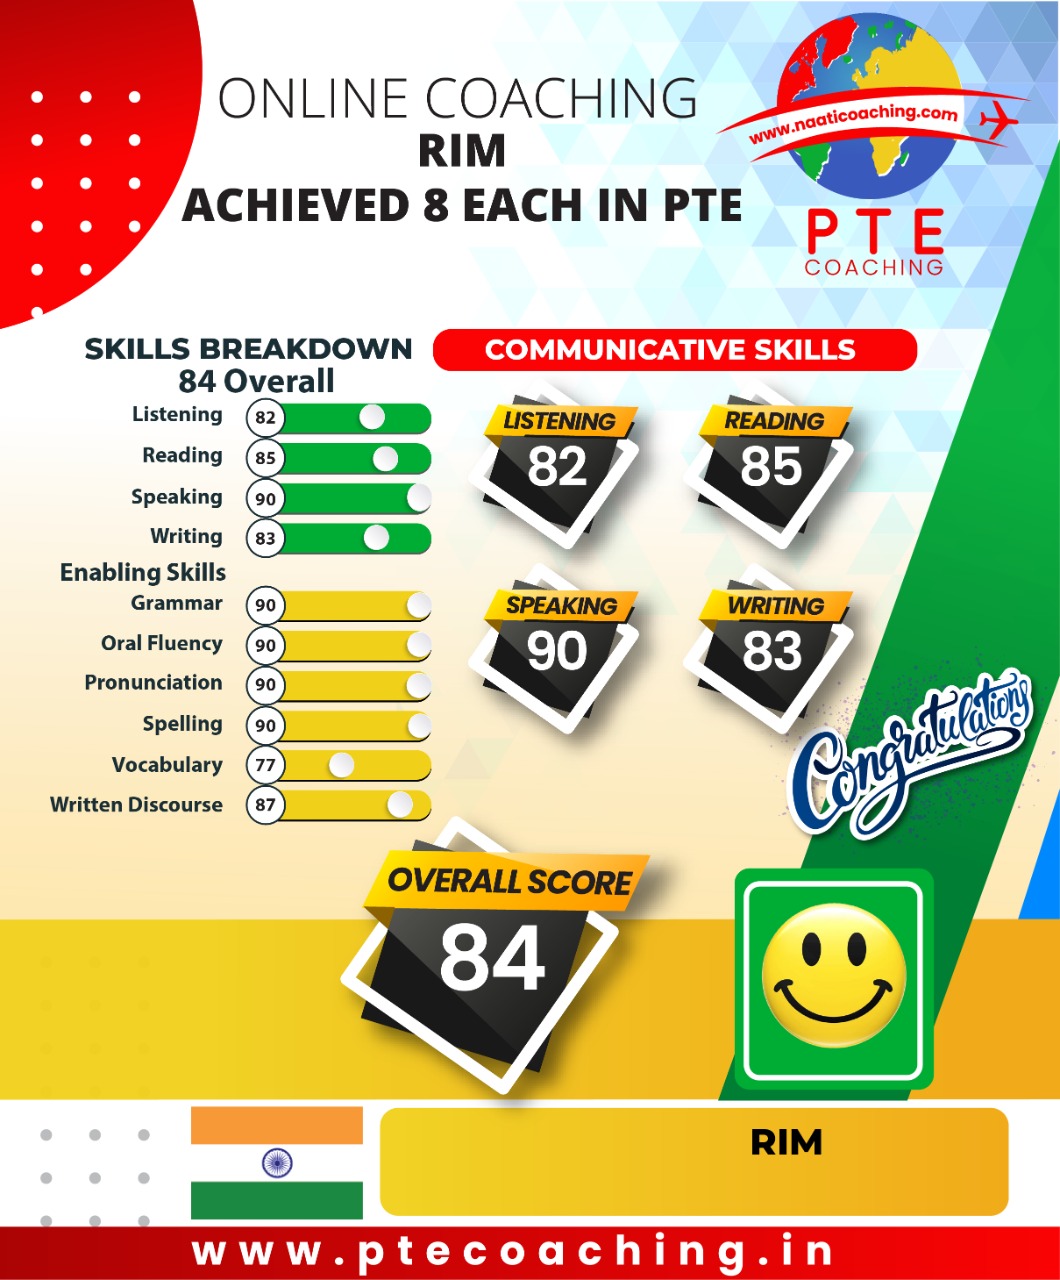 PTE Coaching Scorecard - Rim achieved 8 each in PTE